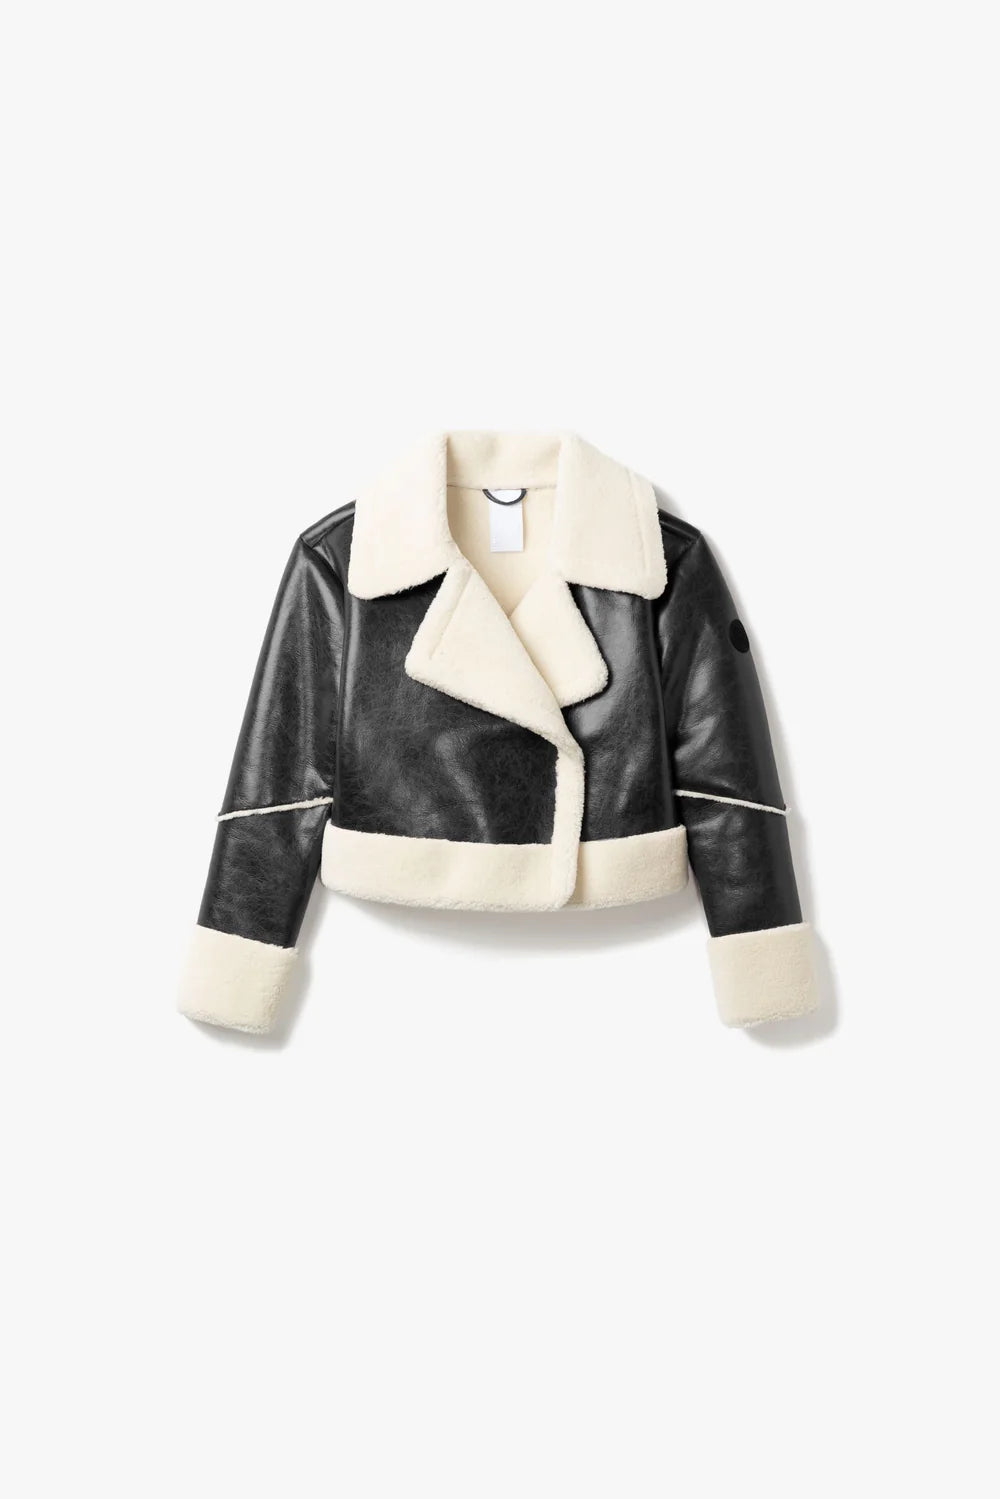 Emika Black Leather Jacket, Jacket by Noise | LIT Boutique